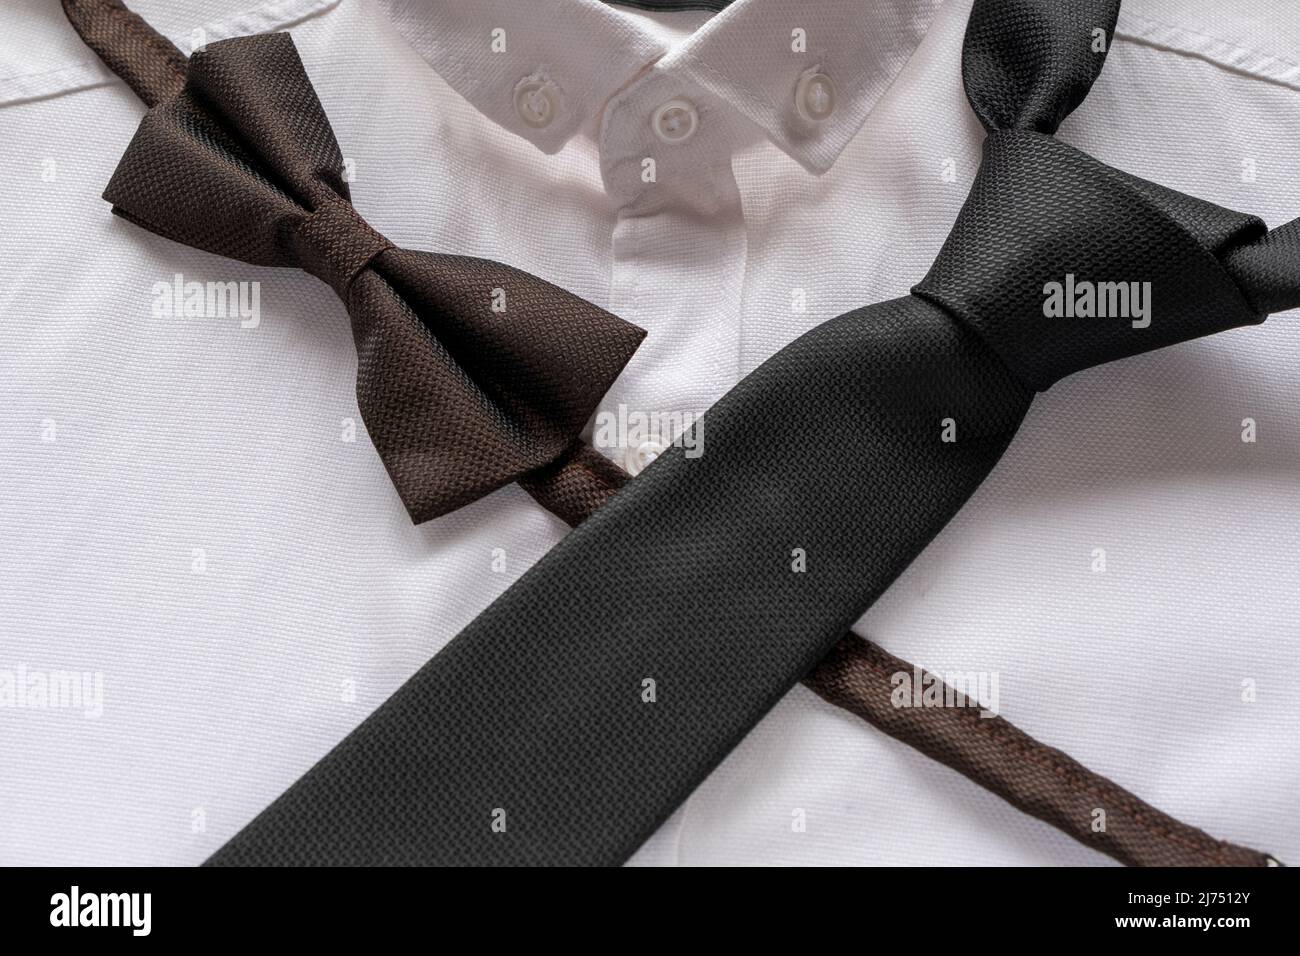 Cravate noire et noeud papillon sur chemise blanche, concept de mode  hommes, accessoires de couleur noire, idée de vêtements hommes, vue assise  Photo Stock - Alamy